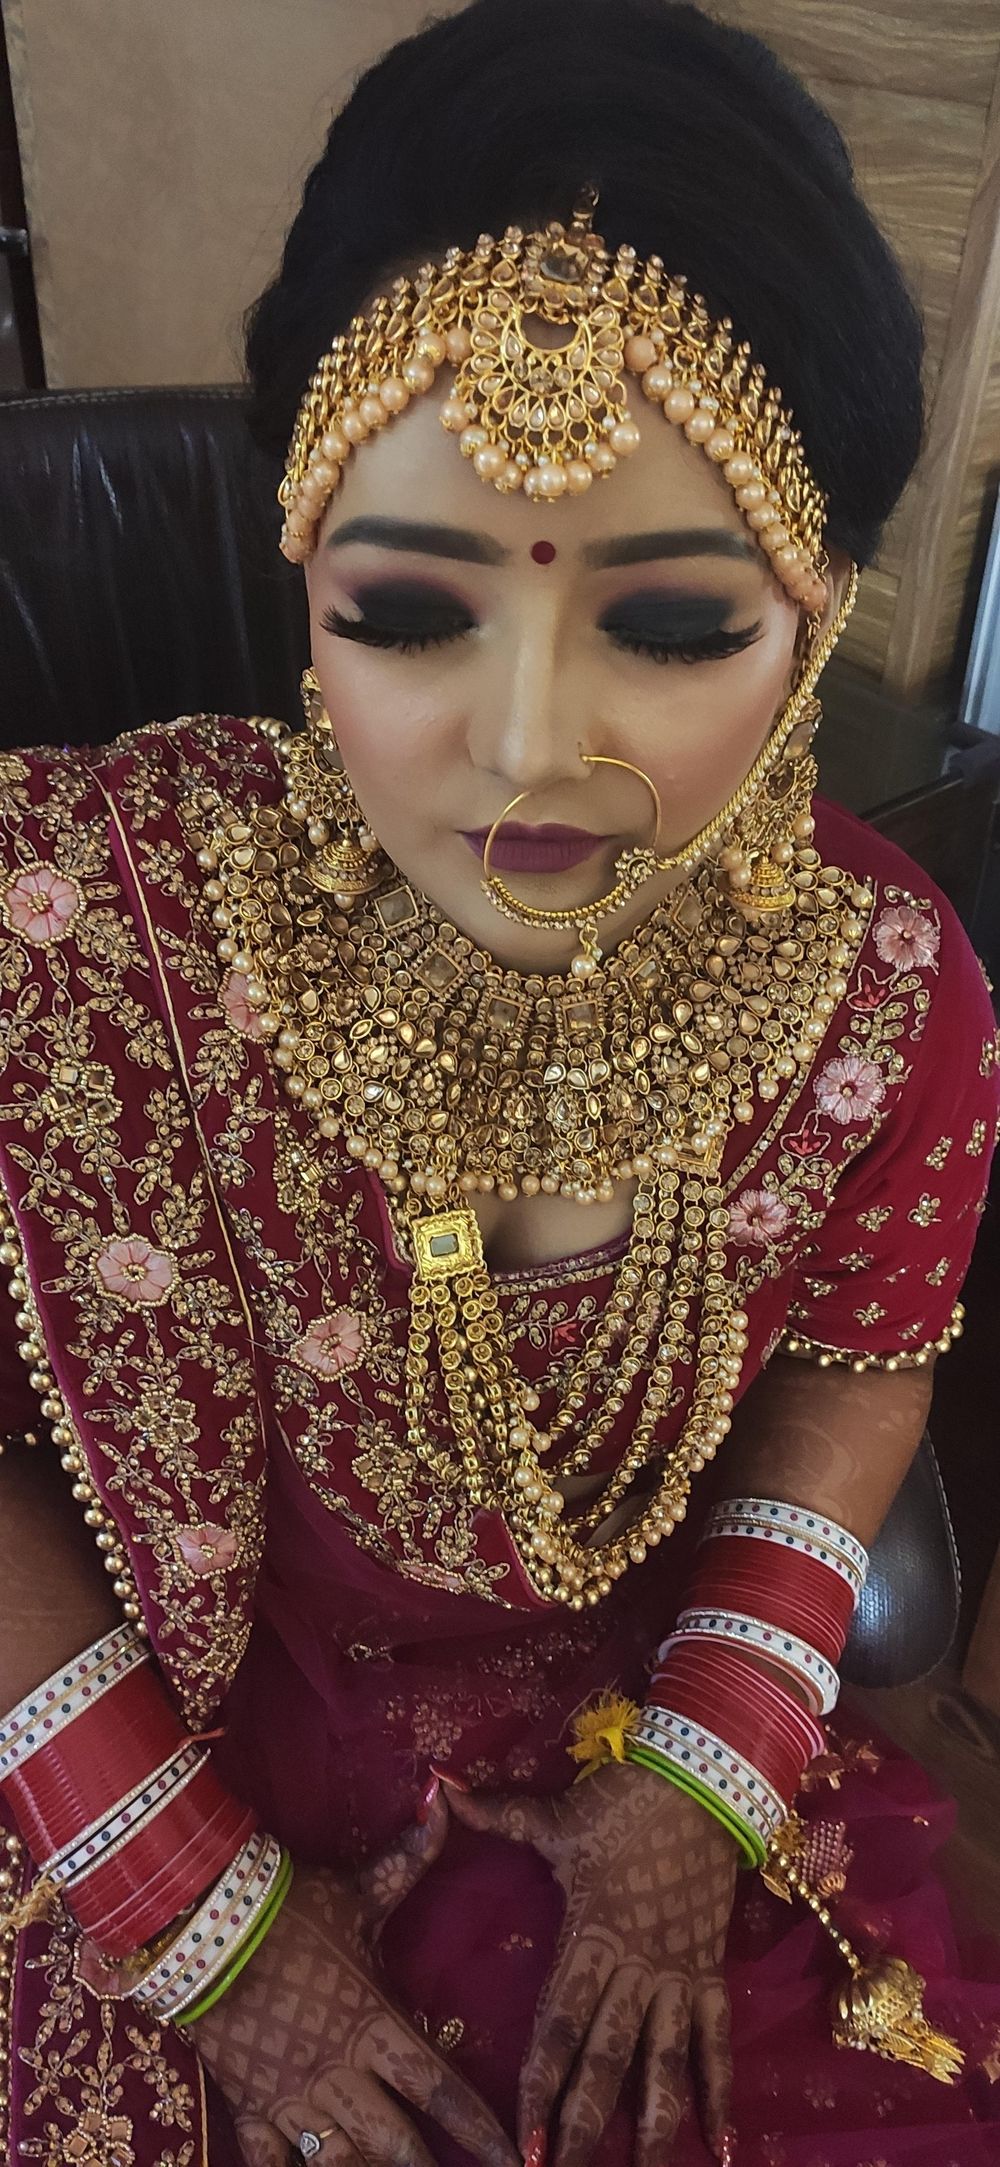 Photo From Kiran (Hd airbrushe bridal makeup) - By Heena Batra Makeovers